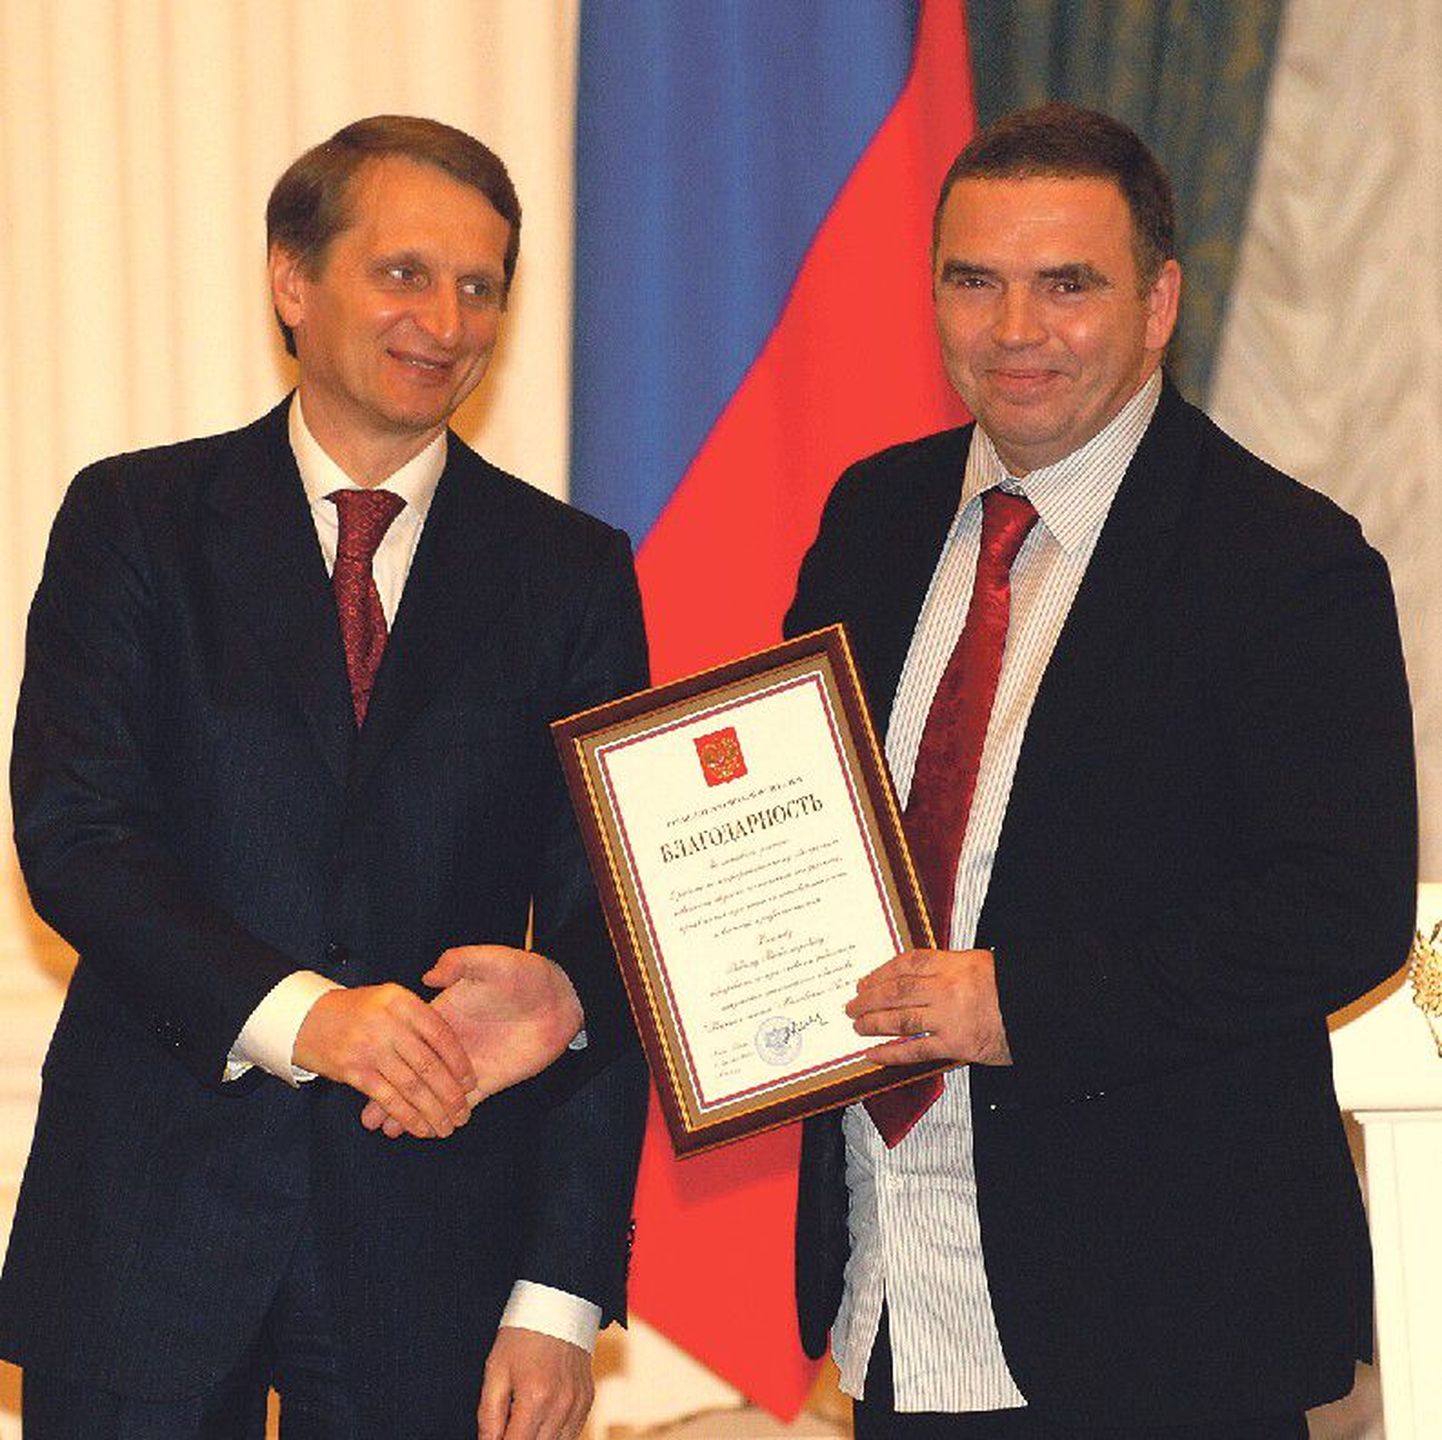 Вадим Речкалов (справа) получил почетную грамоту президента из рук главы администрации Кремля Сергея Нарышкина (справа).